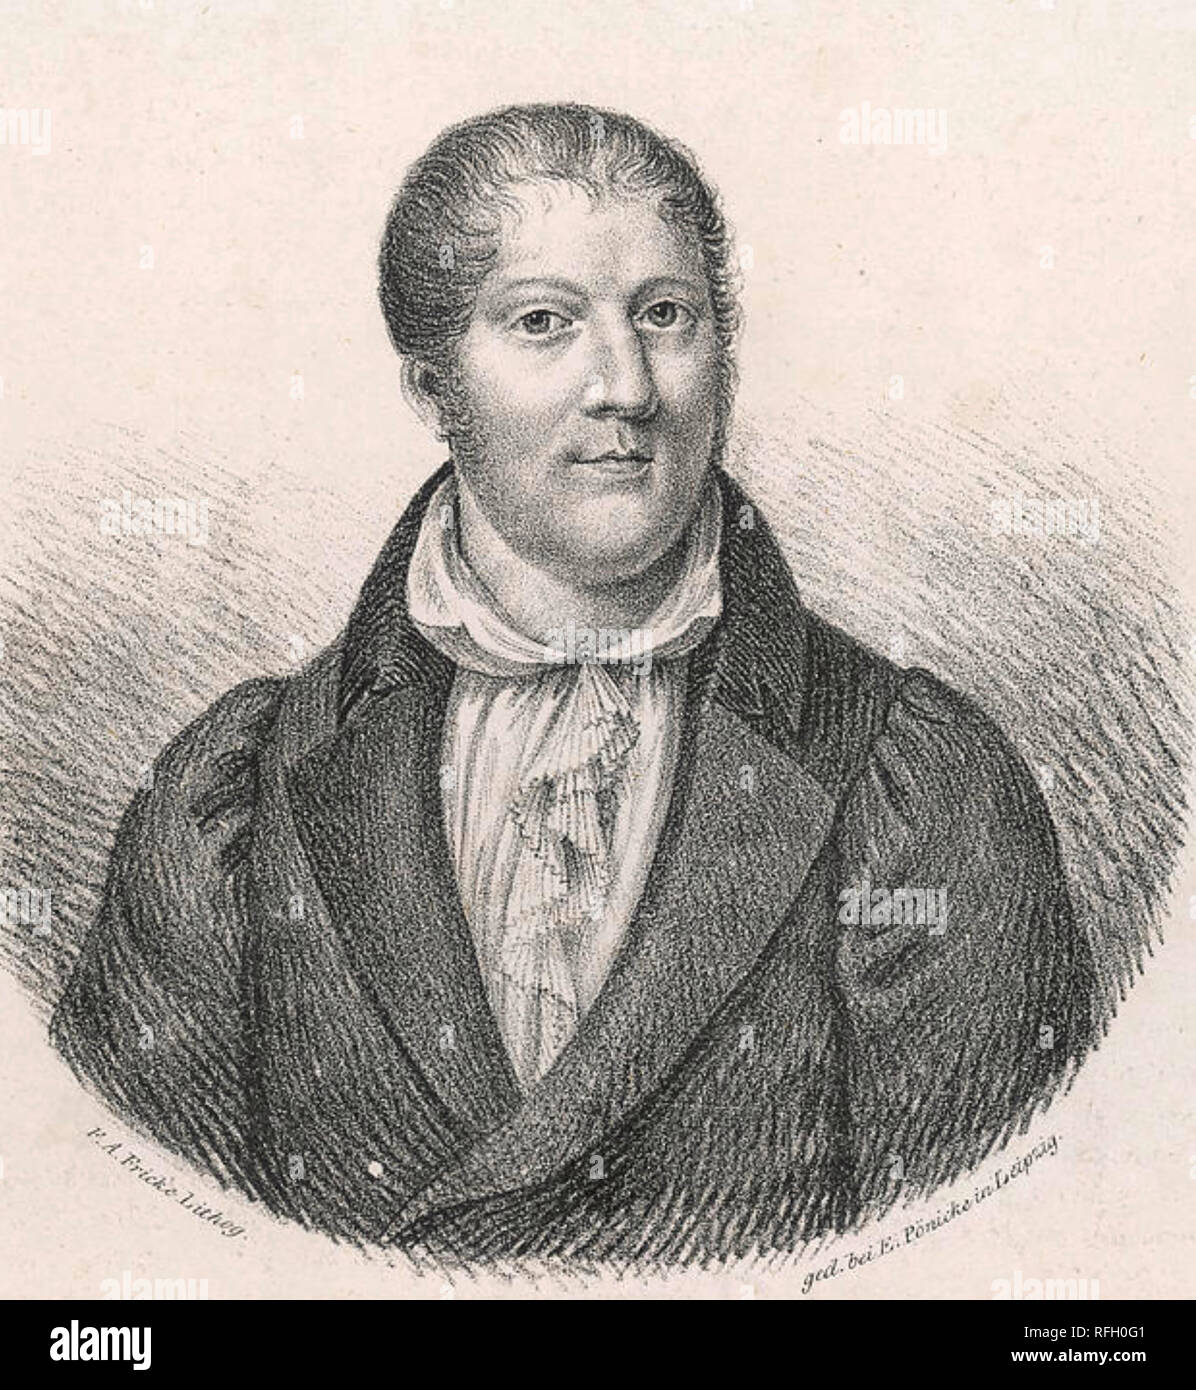 LOUIS Spohr (1784-1859) compositeur allemand Banque D'Images